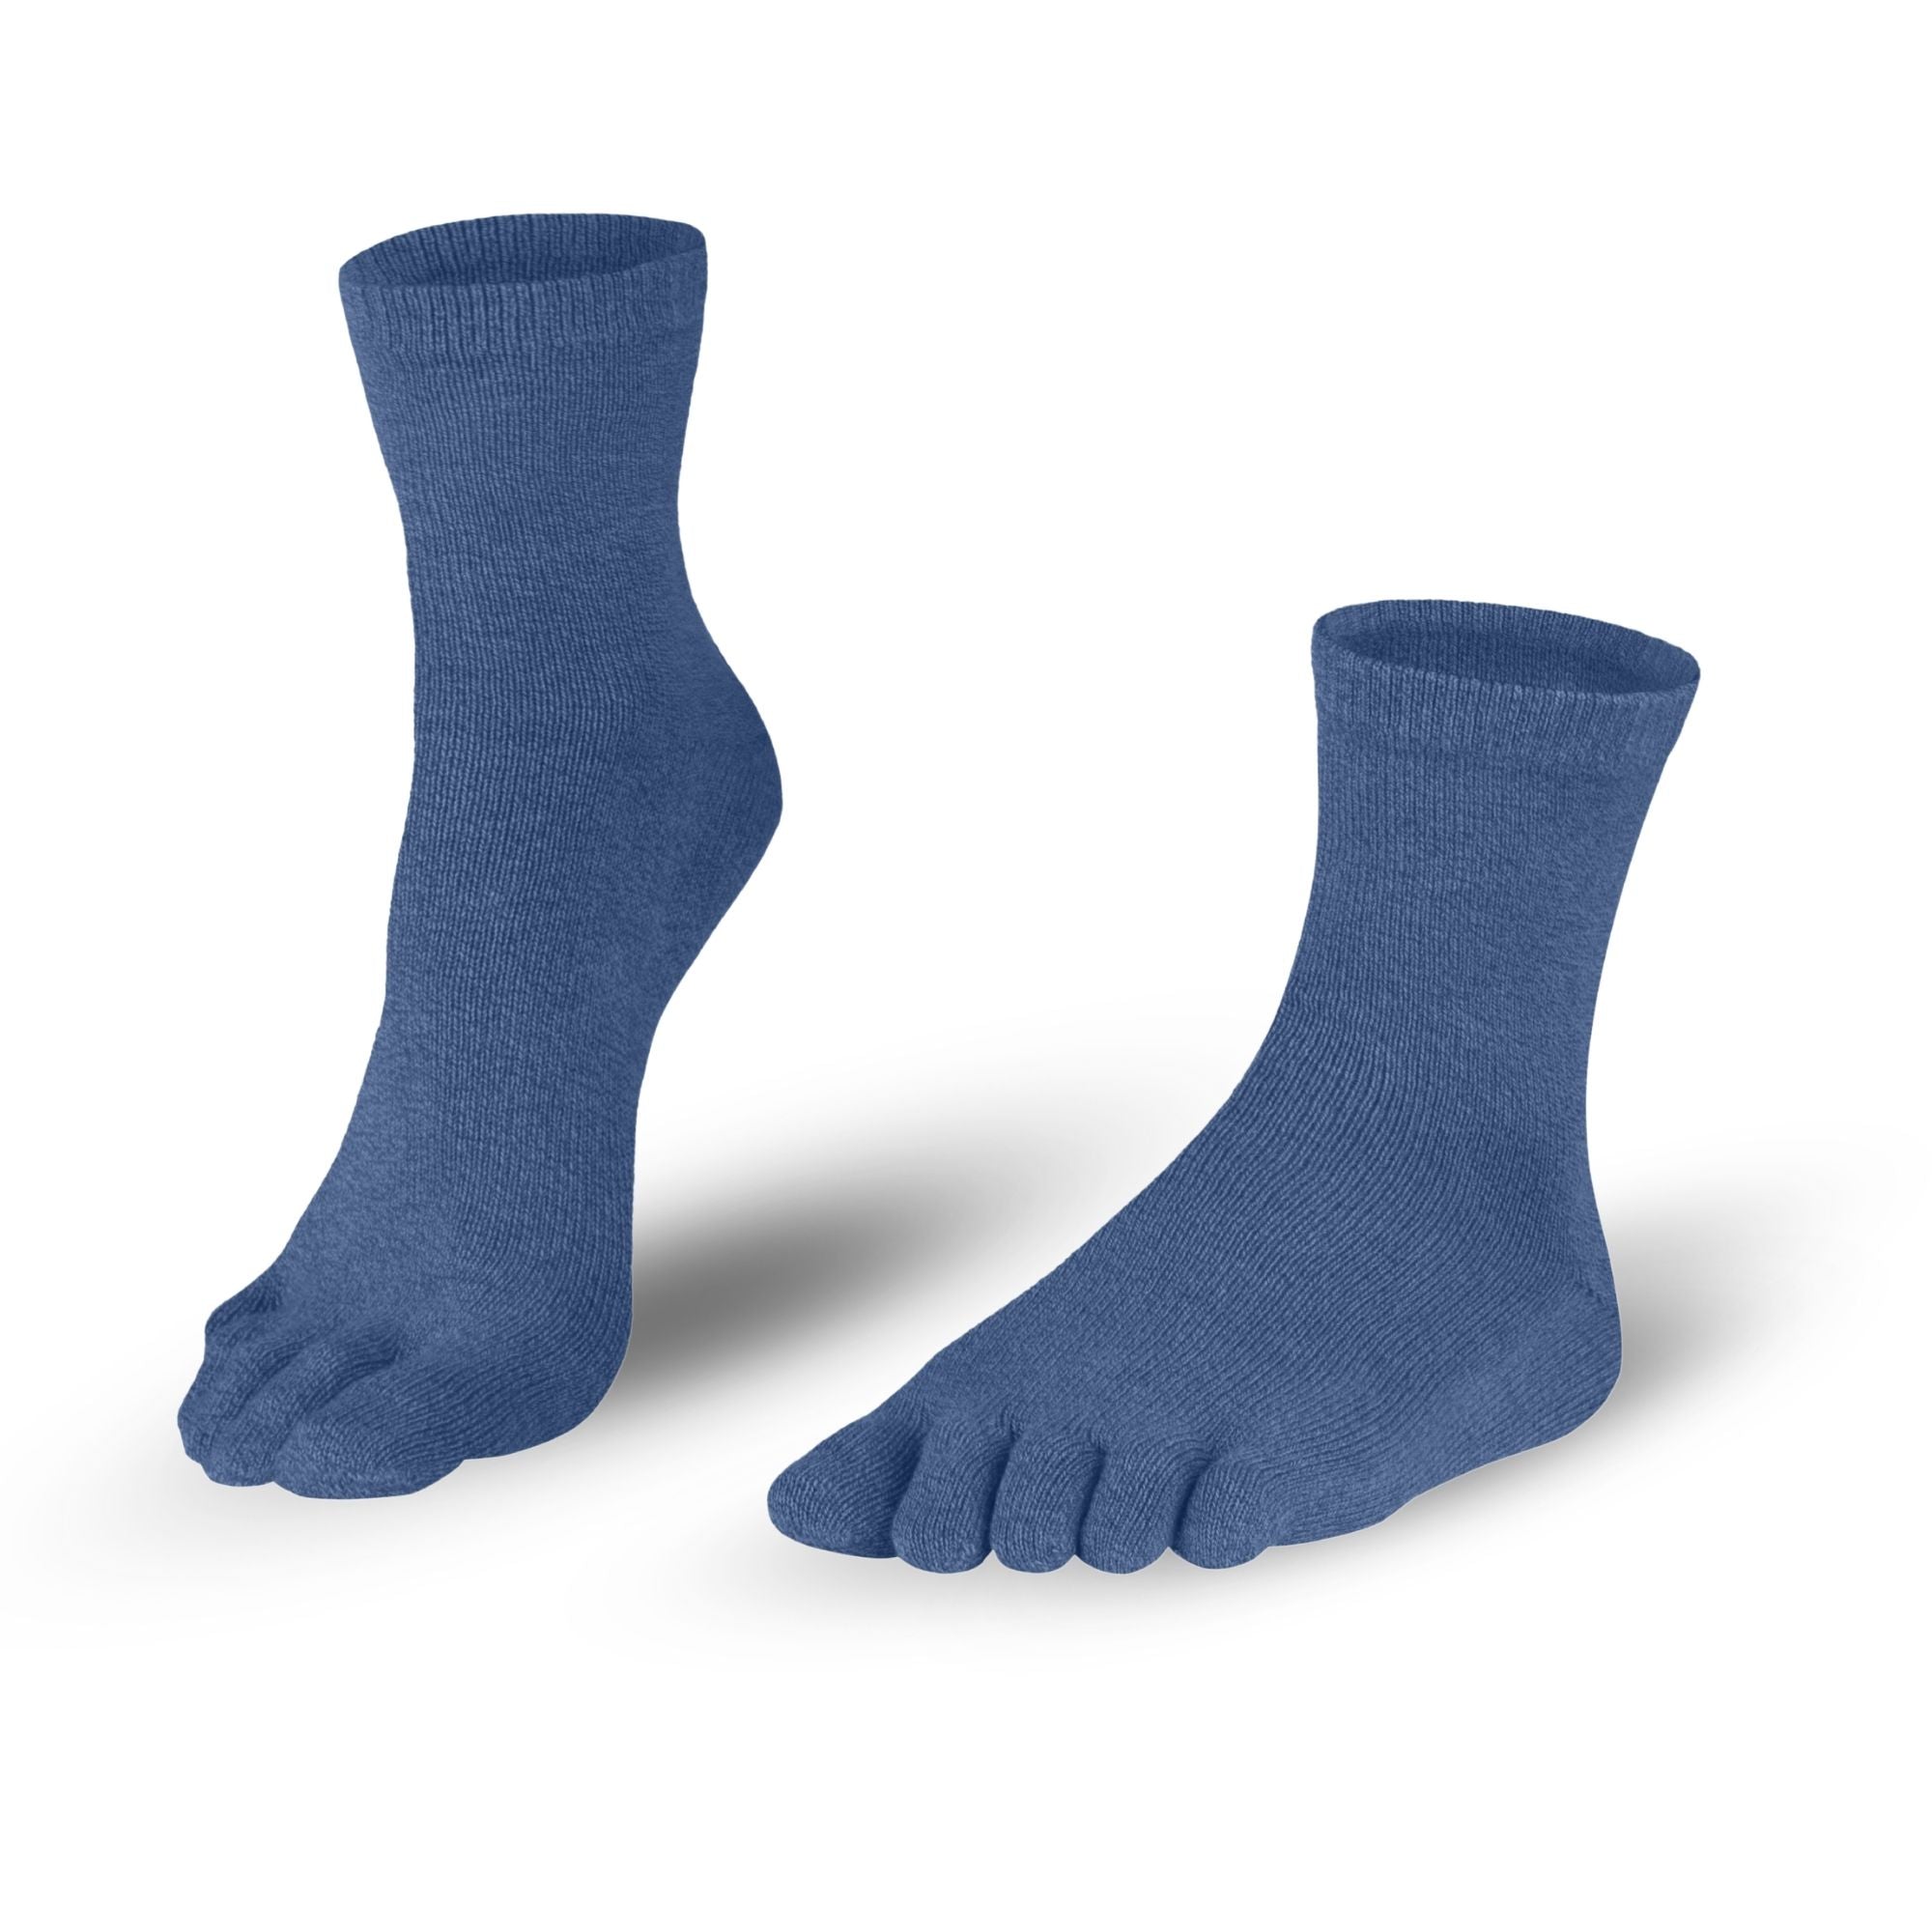 Cotton Toe Socks Socks in Dull Blue for Women and Men